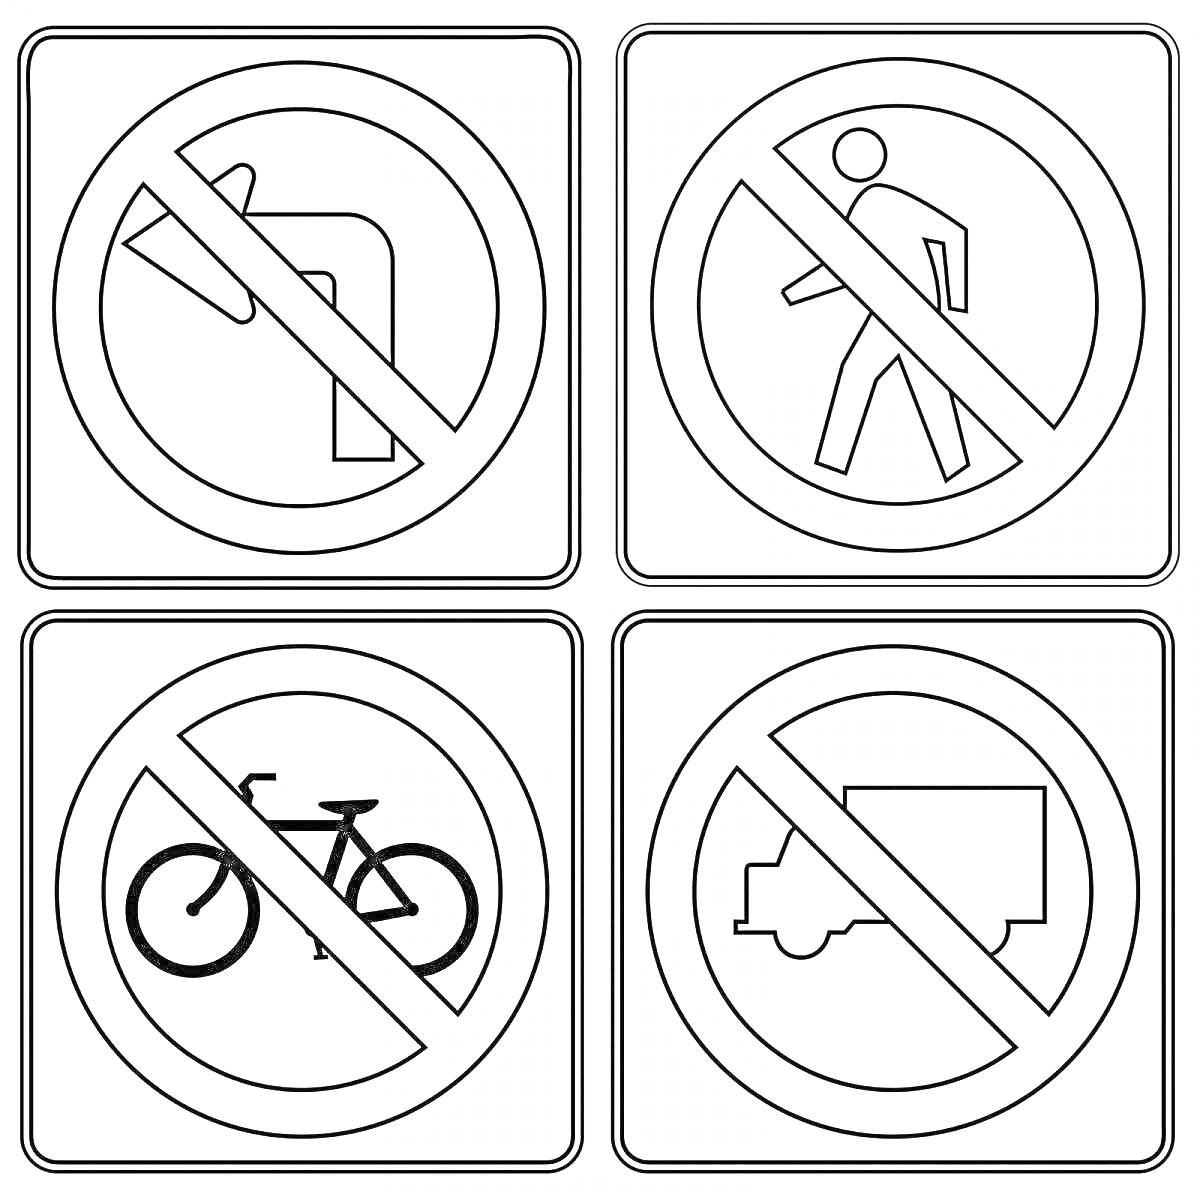 Раскраска запрещающие дорожные знаки - запрет поворота налево, запрет пешеходам, запрет велосипедистам, запрет грузовым машинам, формат для детей